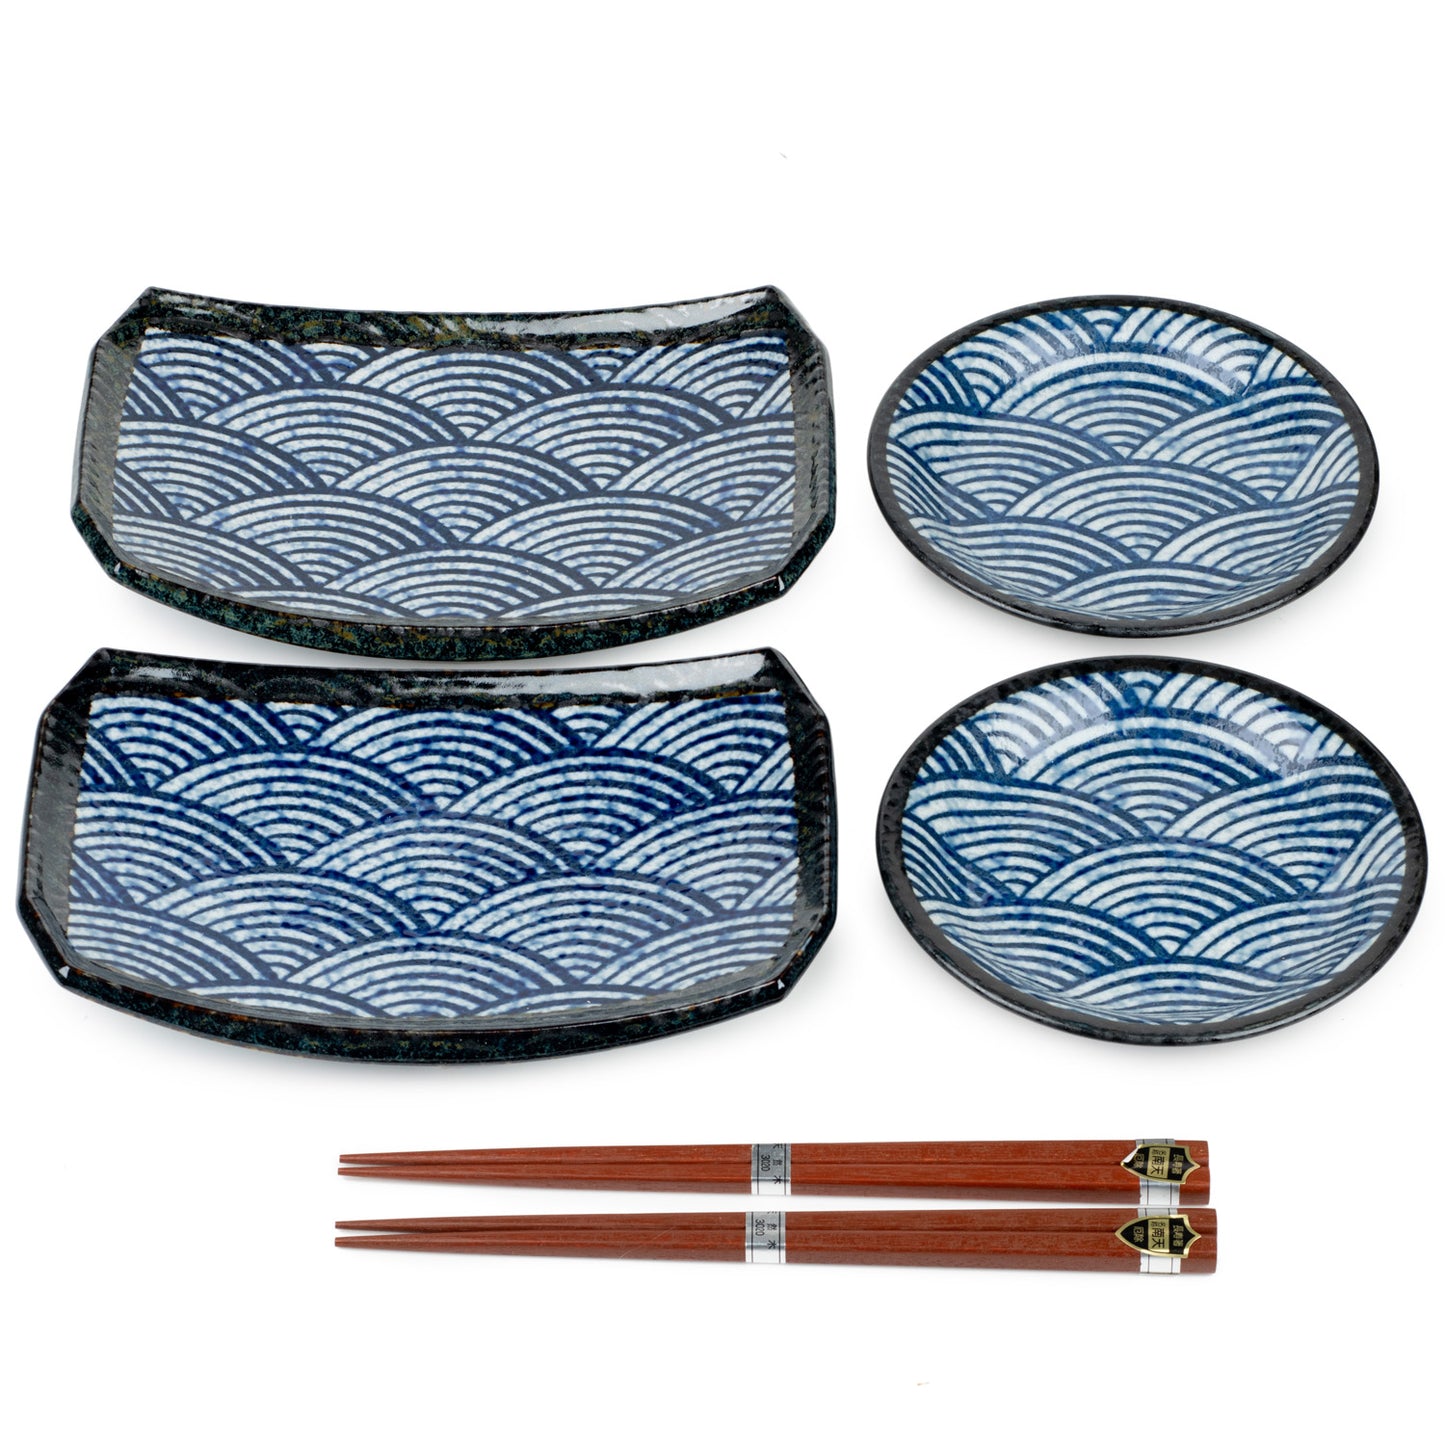 New Seikaha Oblong Japanese Sushi Gift Set